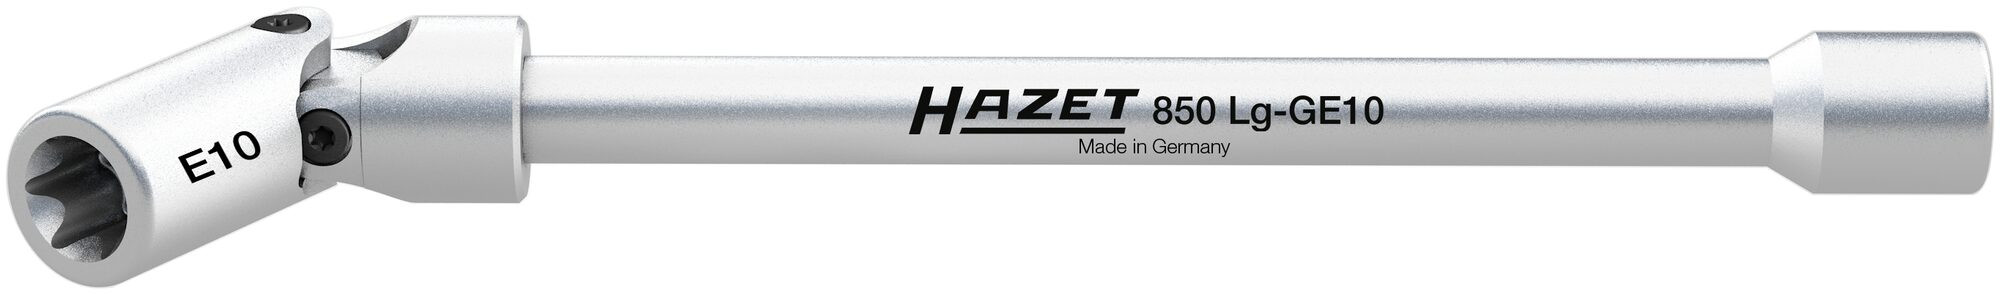 Billede af HAZET Torx lednøgle 1/4 E10 150 mm (850LG-GE10)